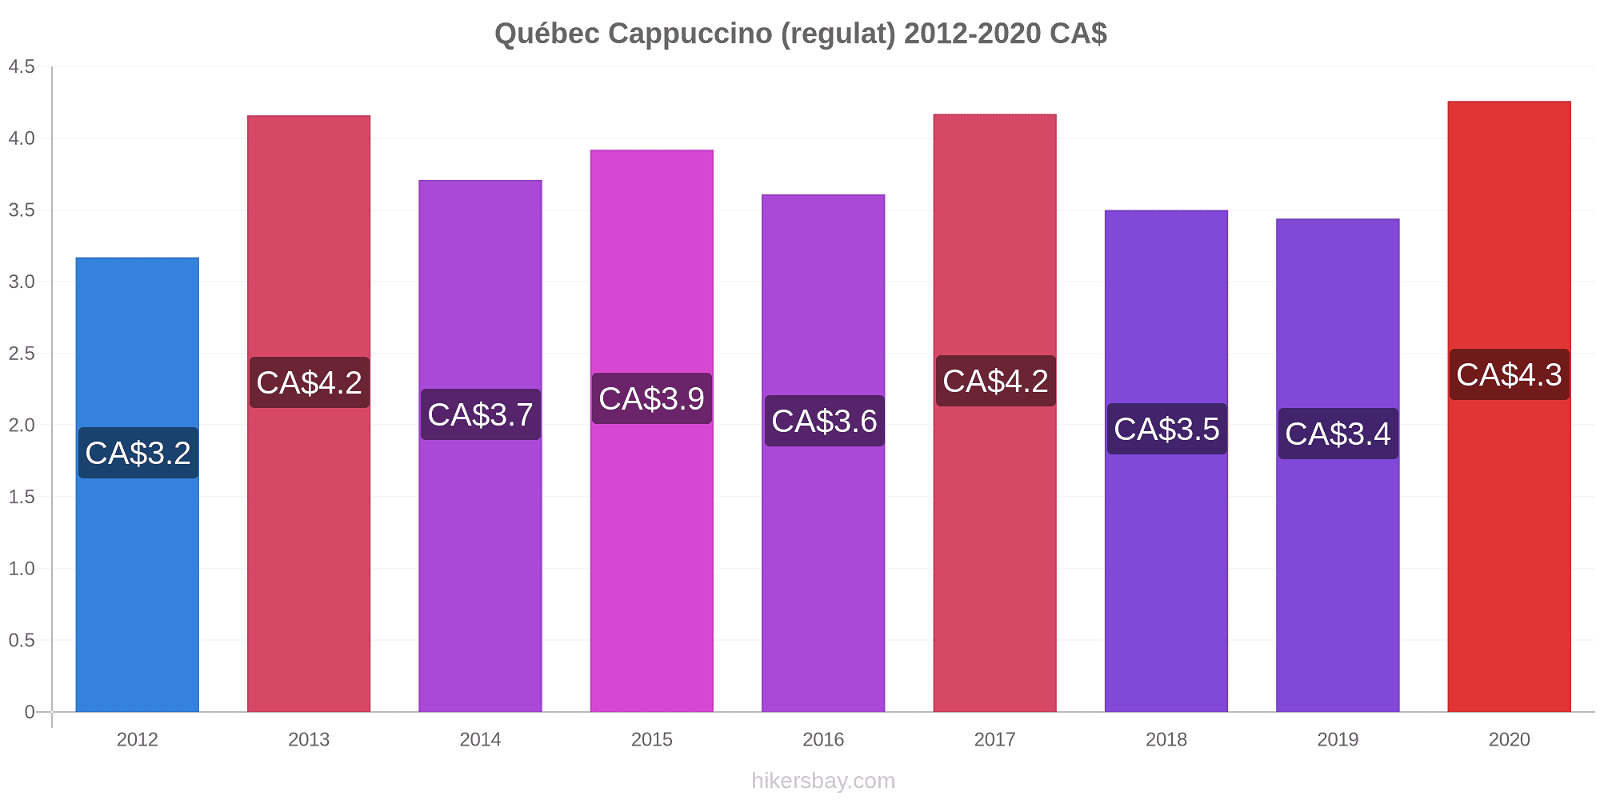 Québec modificări de preț Cappuccino (regulat) hikersbay.com